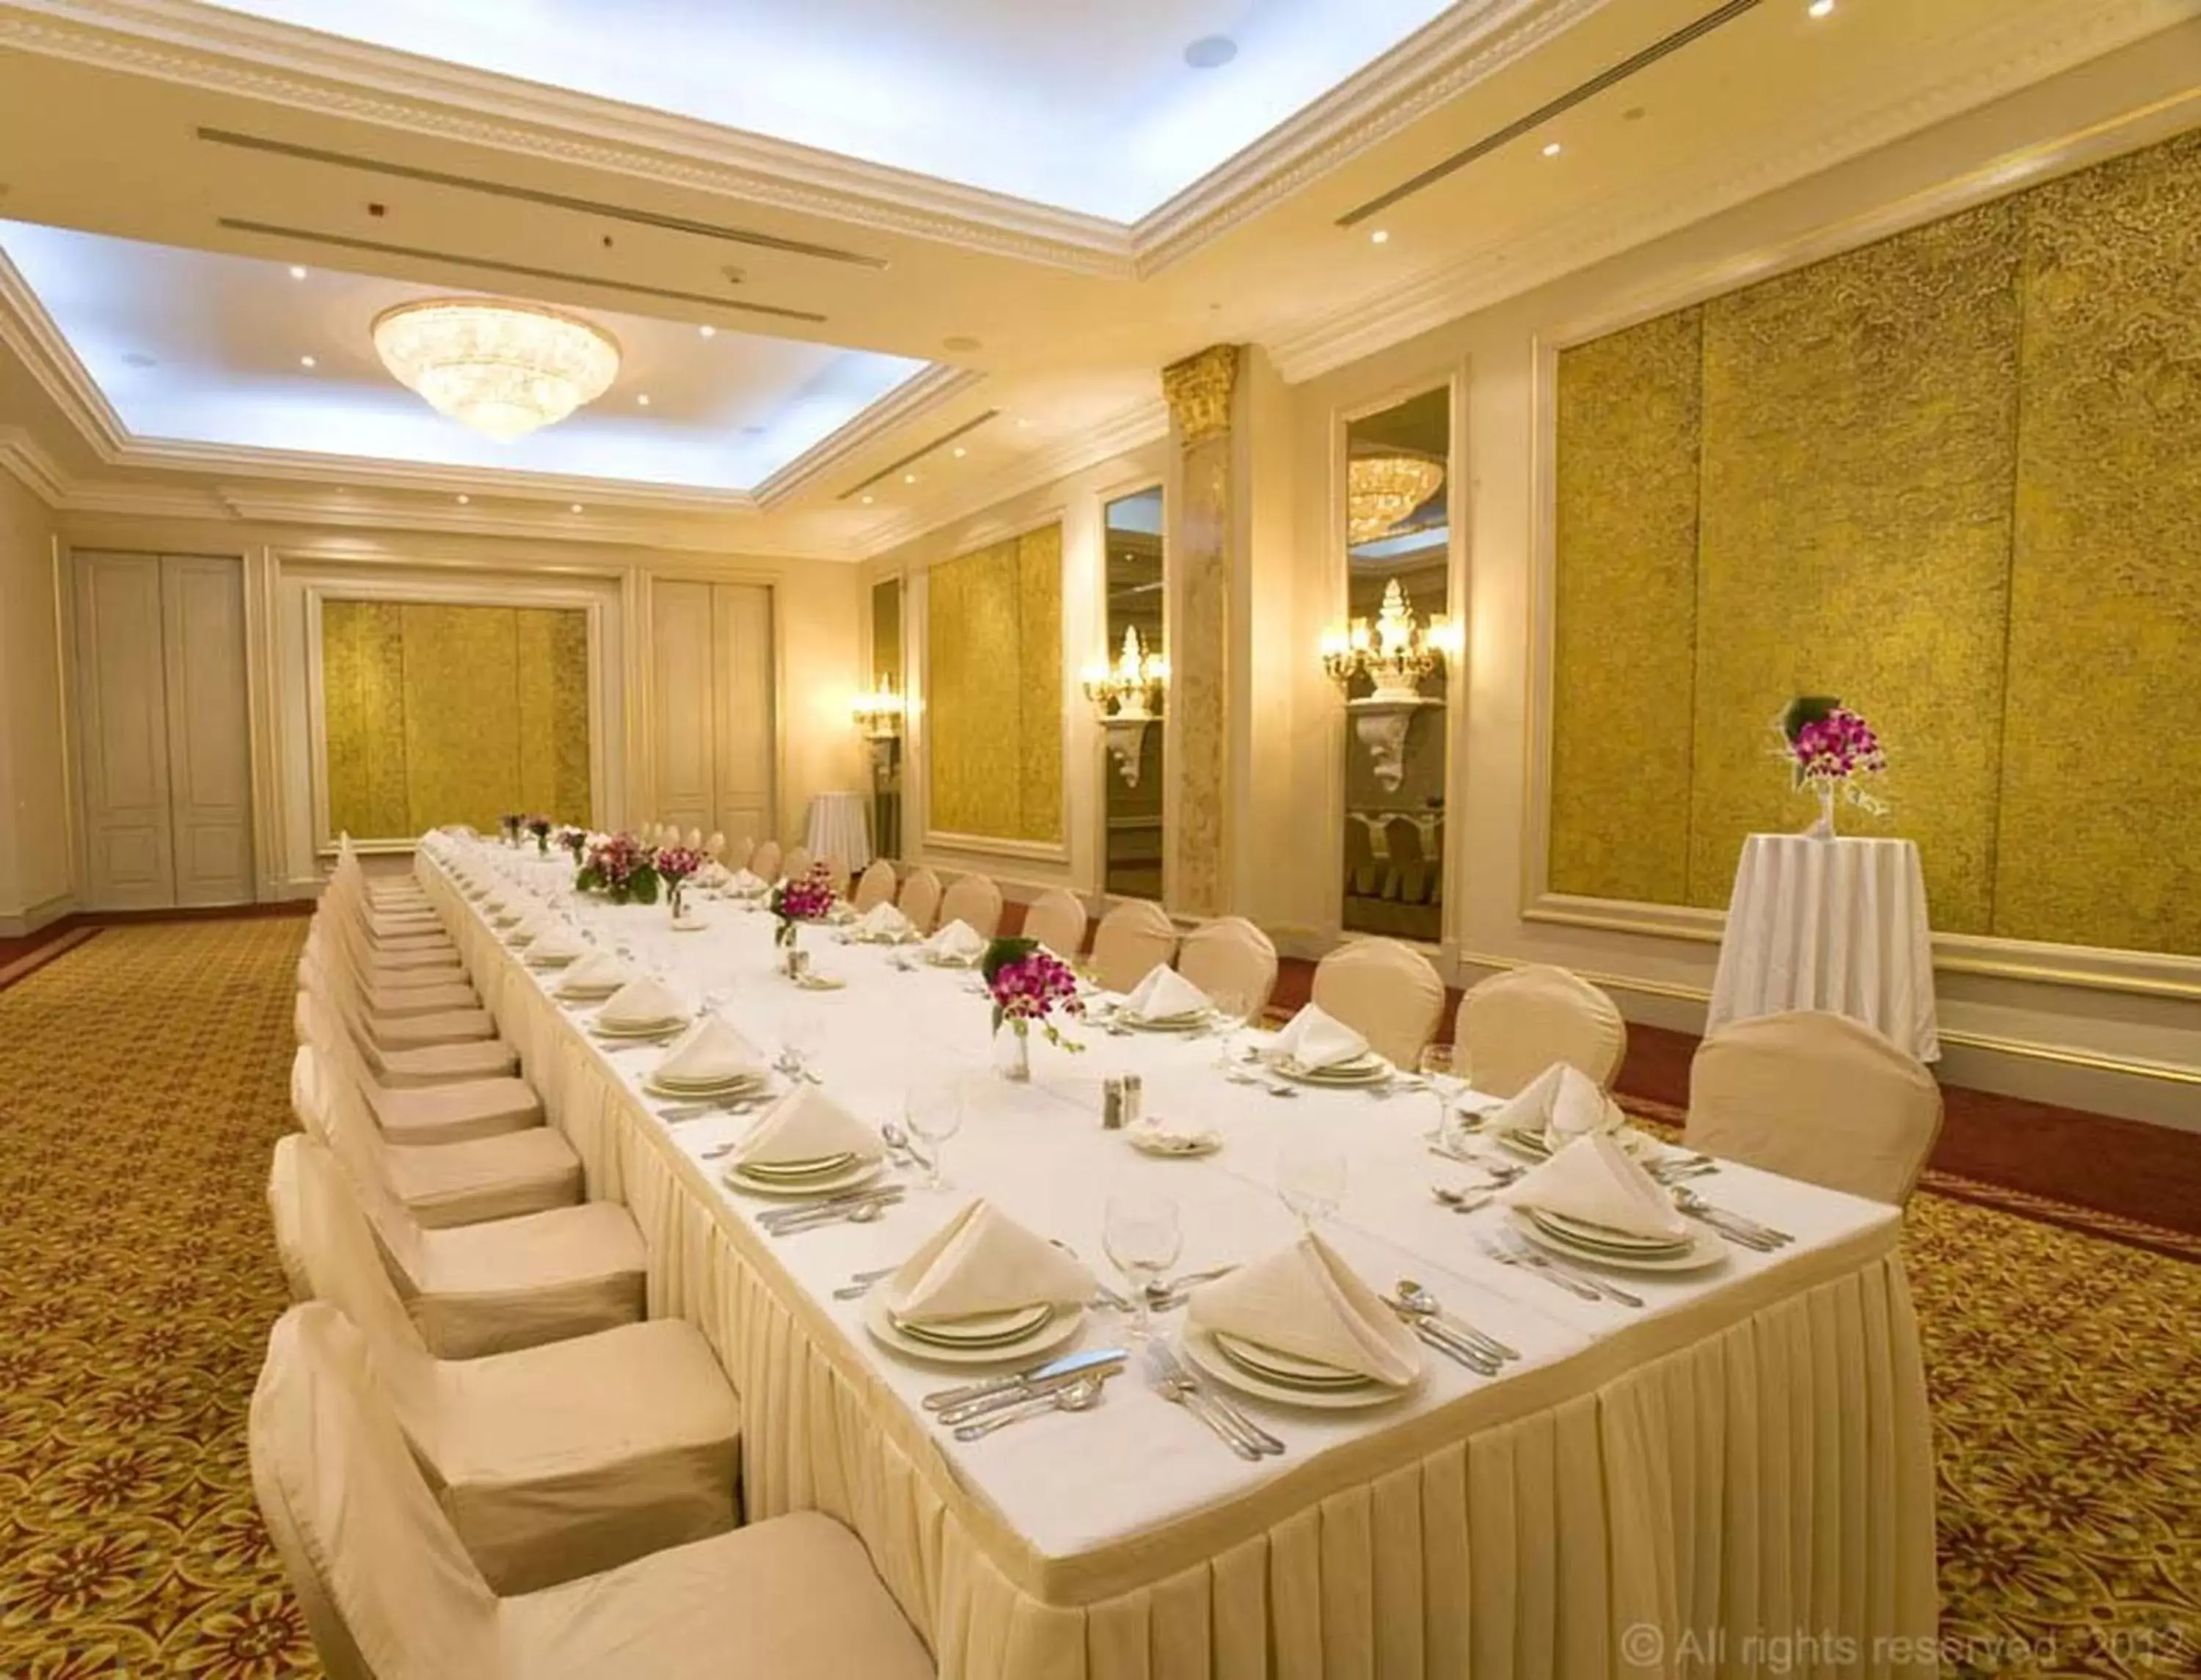 Banquet/Function facilities, Banquet Facilities in Millennium Hotel Doha